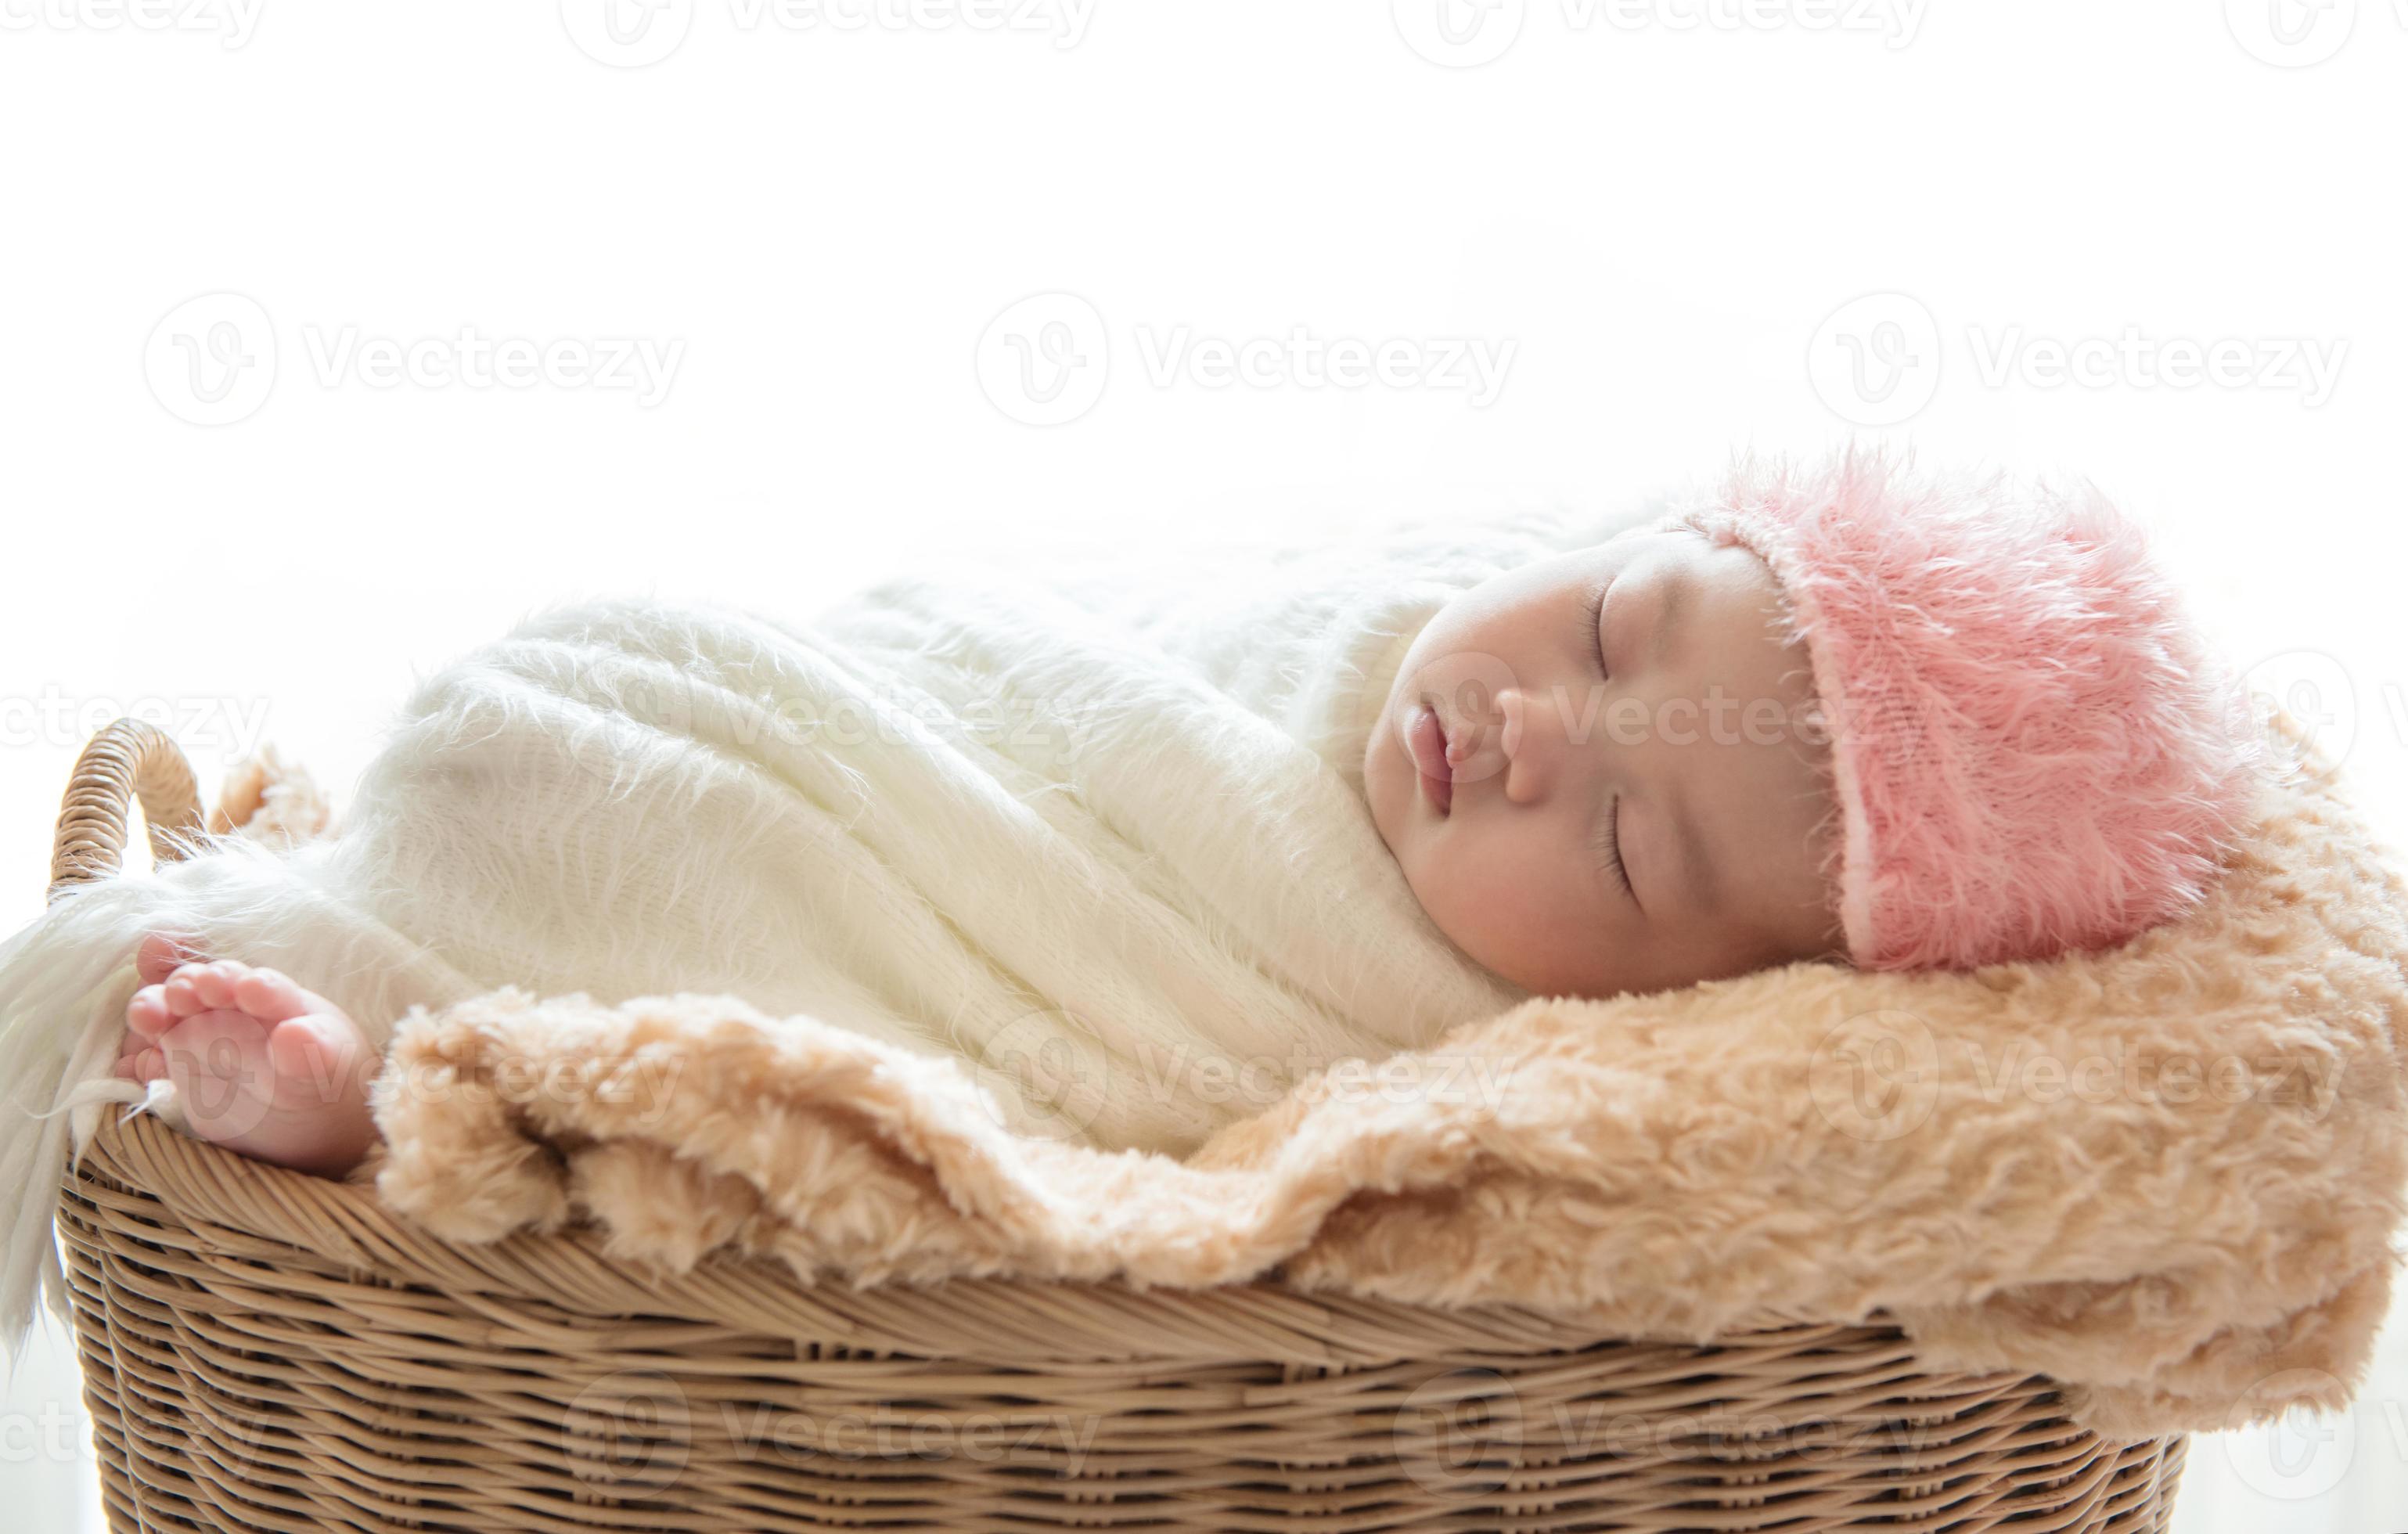 Niña Bebé Recién Nacido, Durmiendo En Una Canasta De Mimbre. Fotos,  retratos, imágenes y fotografía de archivo libres de derecho. Image 8713426